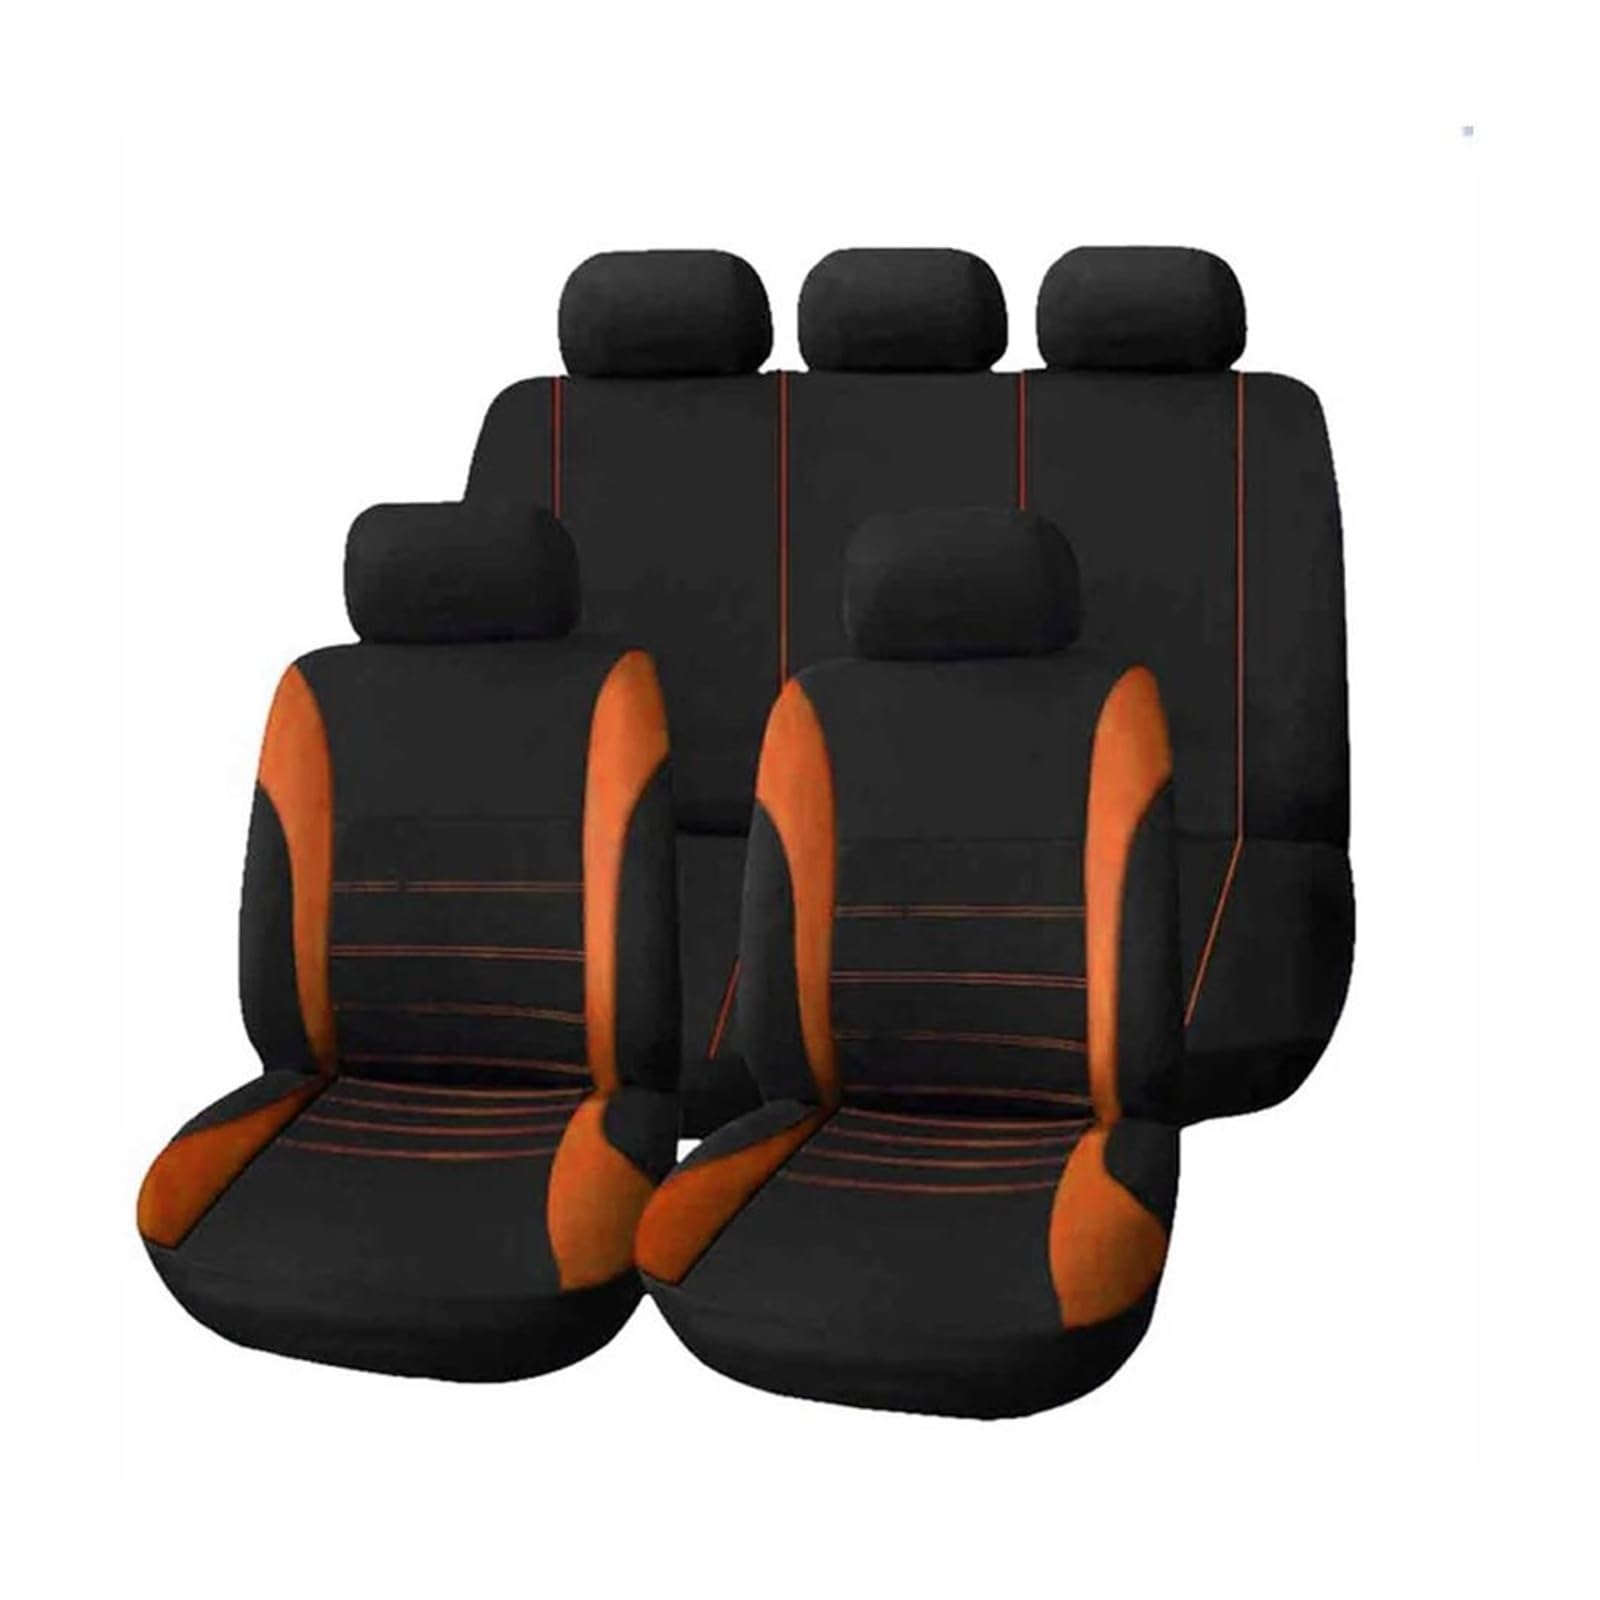 SCiMAX Autositz Sitzbezüge Sitzbezug Für Dacia Für Dokker Für Duster Für Lodgy Für Logan 2 Für Sandero Für Stepway 2 Autositzbezug Autositzbezüge (Farbe : Orange) von SCiMAX